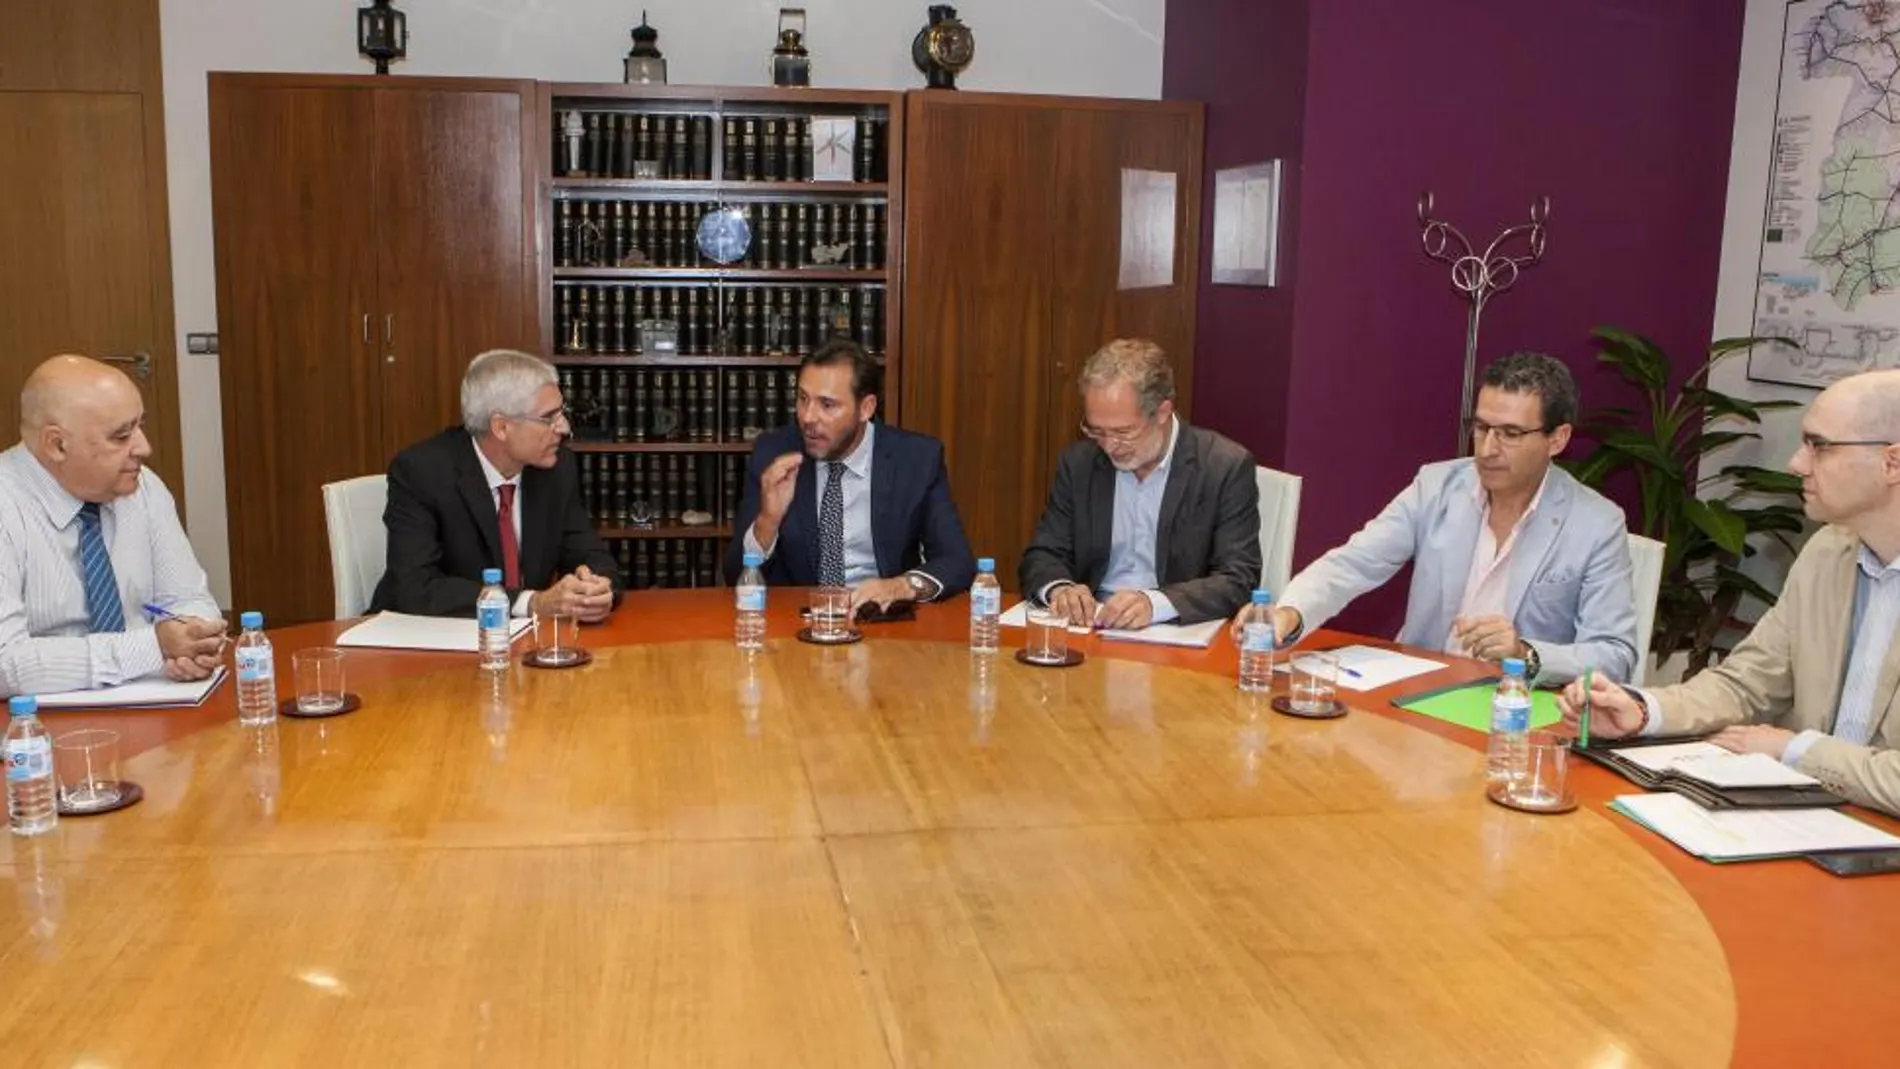 El alcalde de Valladolid, Óscar Puente; el concejal Manuel Saravia y representantes de la Plataforma Avant se reúnen con los nuevos responsables de Renfe, Isaías Tábuas y José Luis Cachafeiro